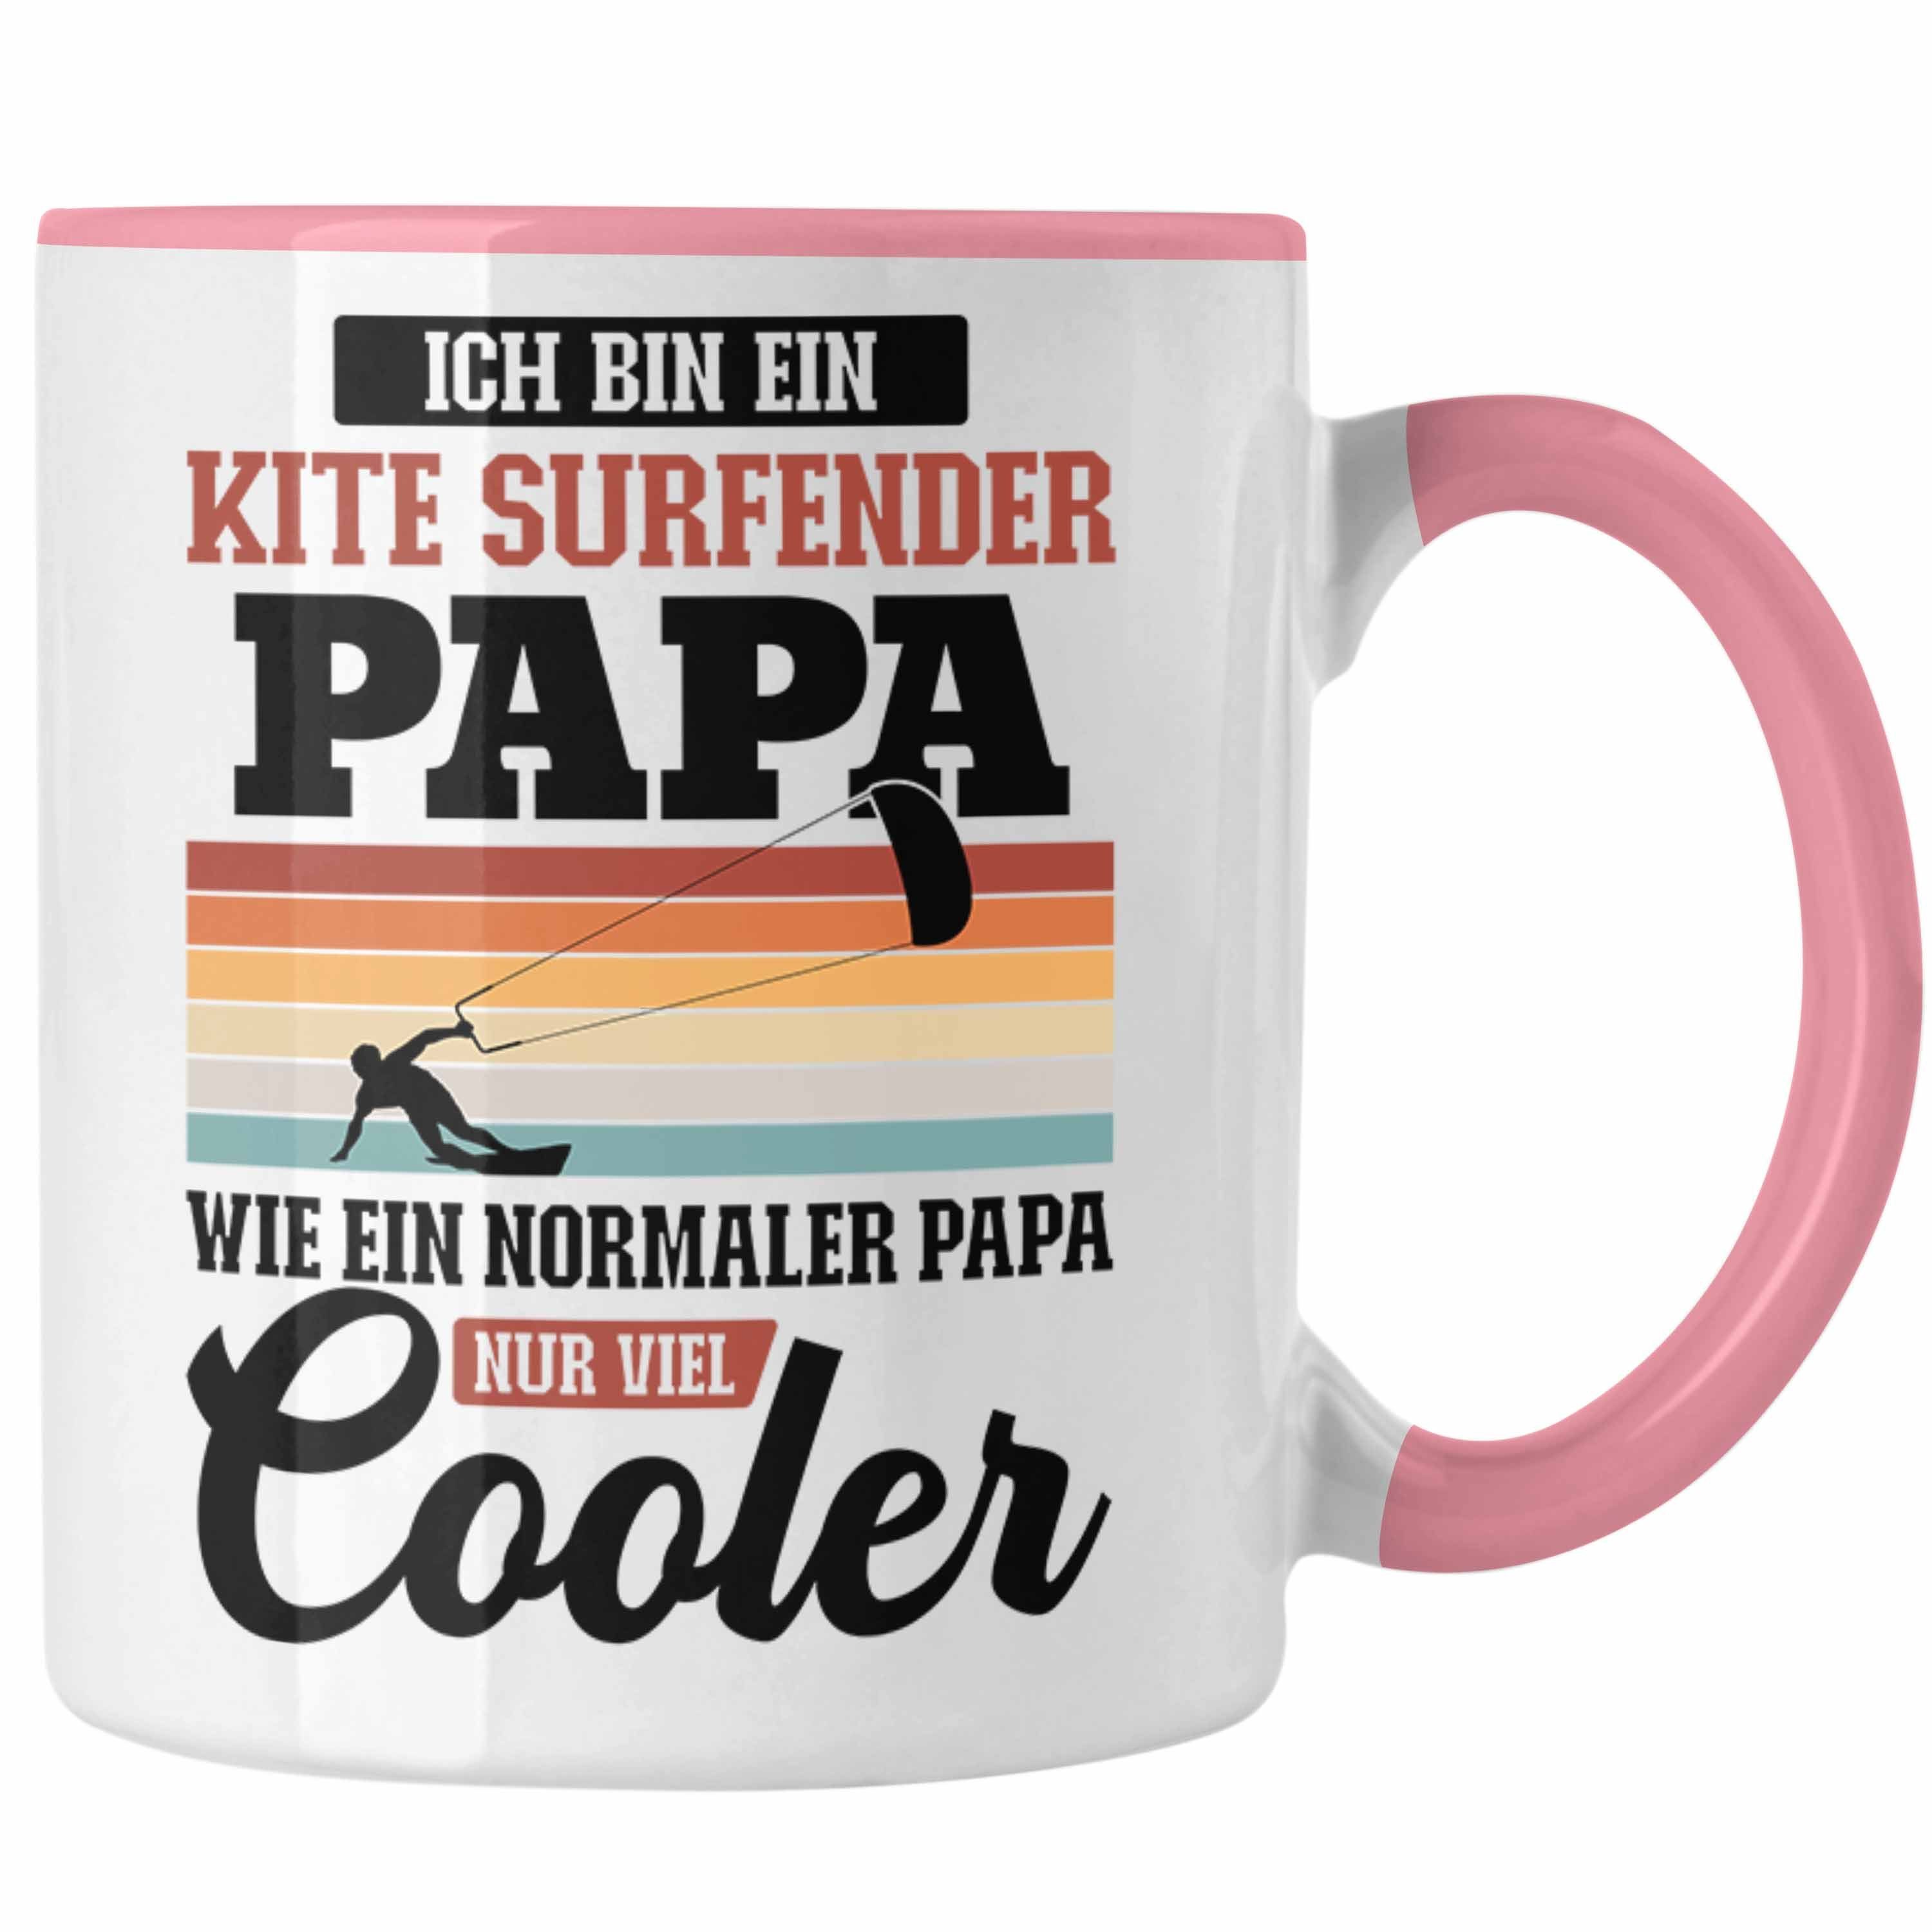 Vater Trendation Surfender Tasse Kitesurfing Tasse Kitesurf Kitesurfen - Rosa Kite Papa Papa Geschenk Trendation